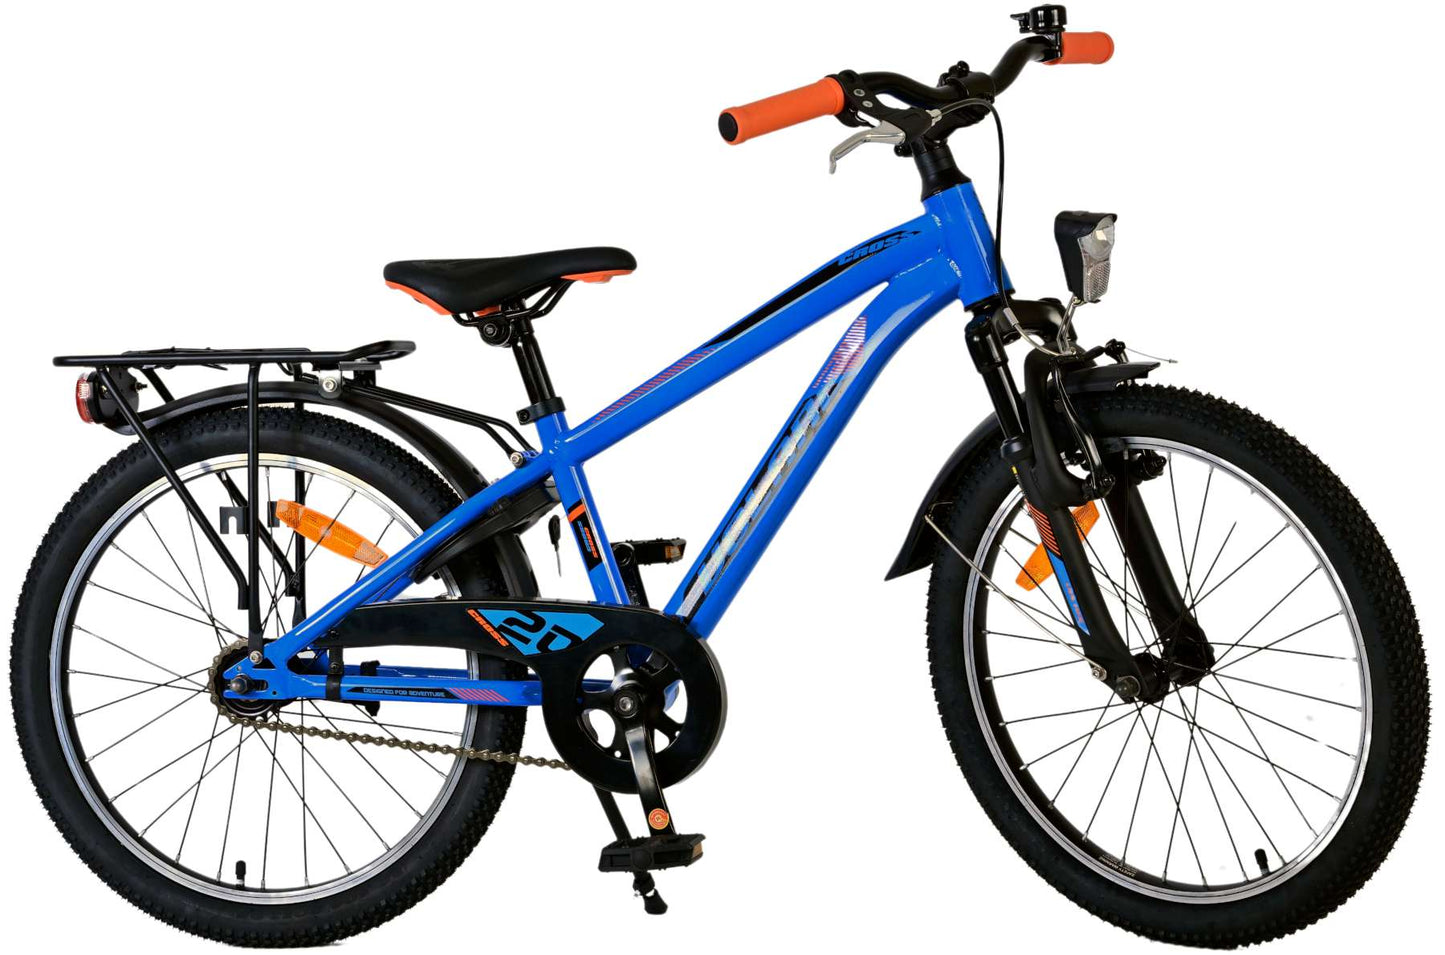 Bicycle per bambini Vlatare Cross - Boys - 20 pollici - Blu